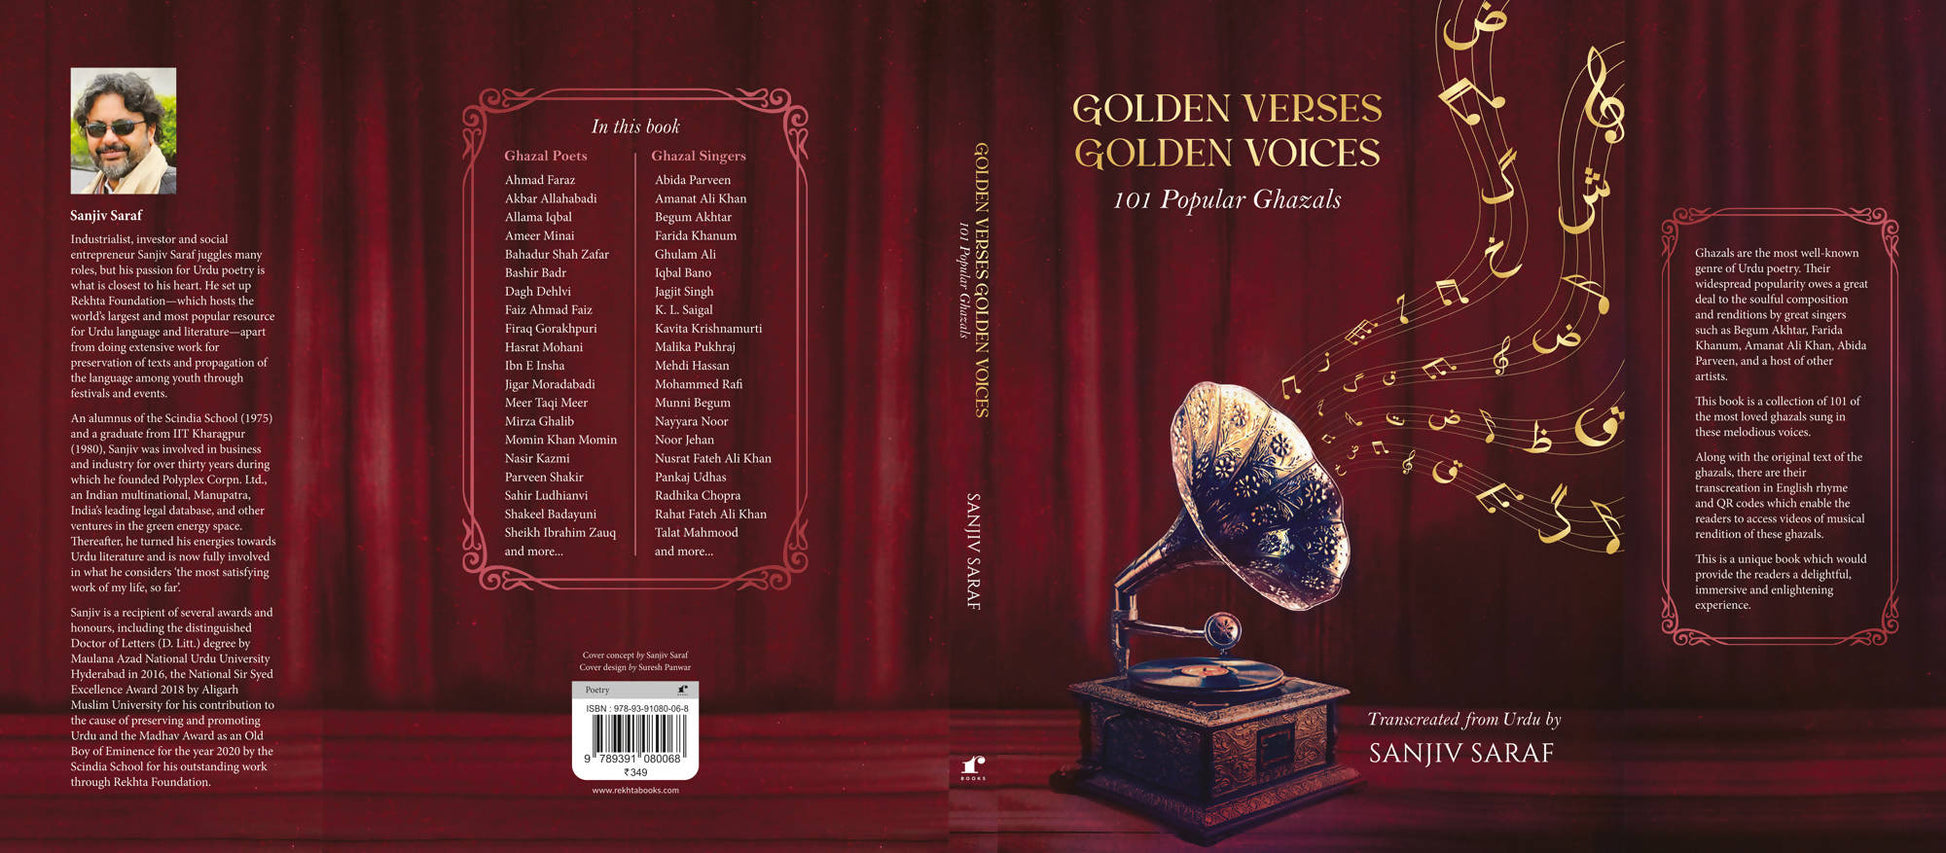 Golden Verses Golden Voices (101 Popular Ghazals)